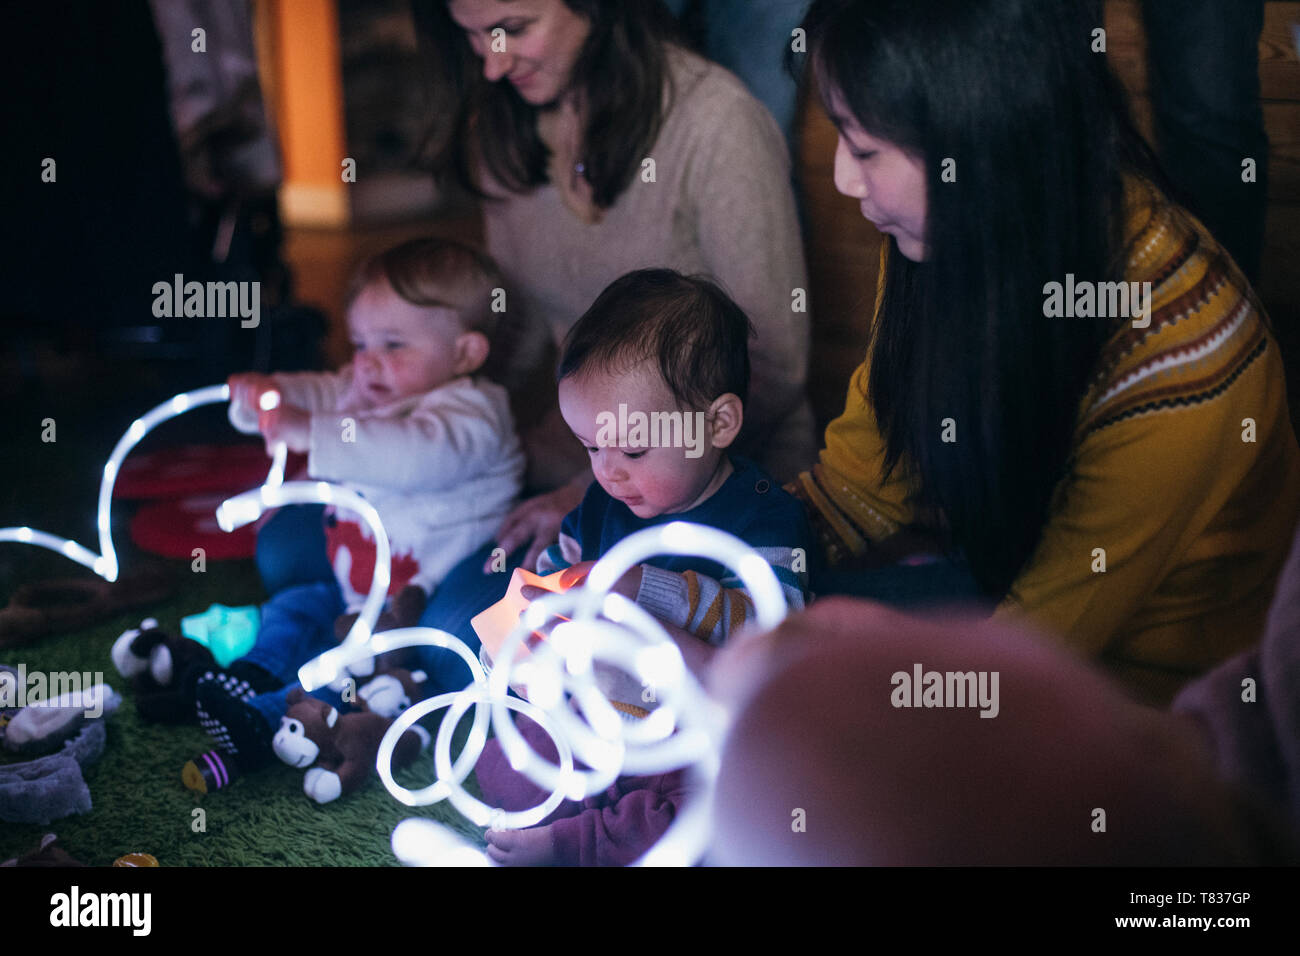 Mutter und Baby sensorische spielen Gruppe sind mit LED-Beleuchtung und Spielzeug für die Entwicklung spielen. Stockfoto